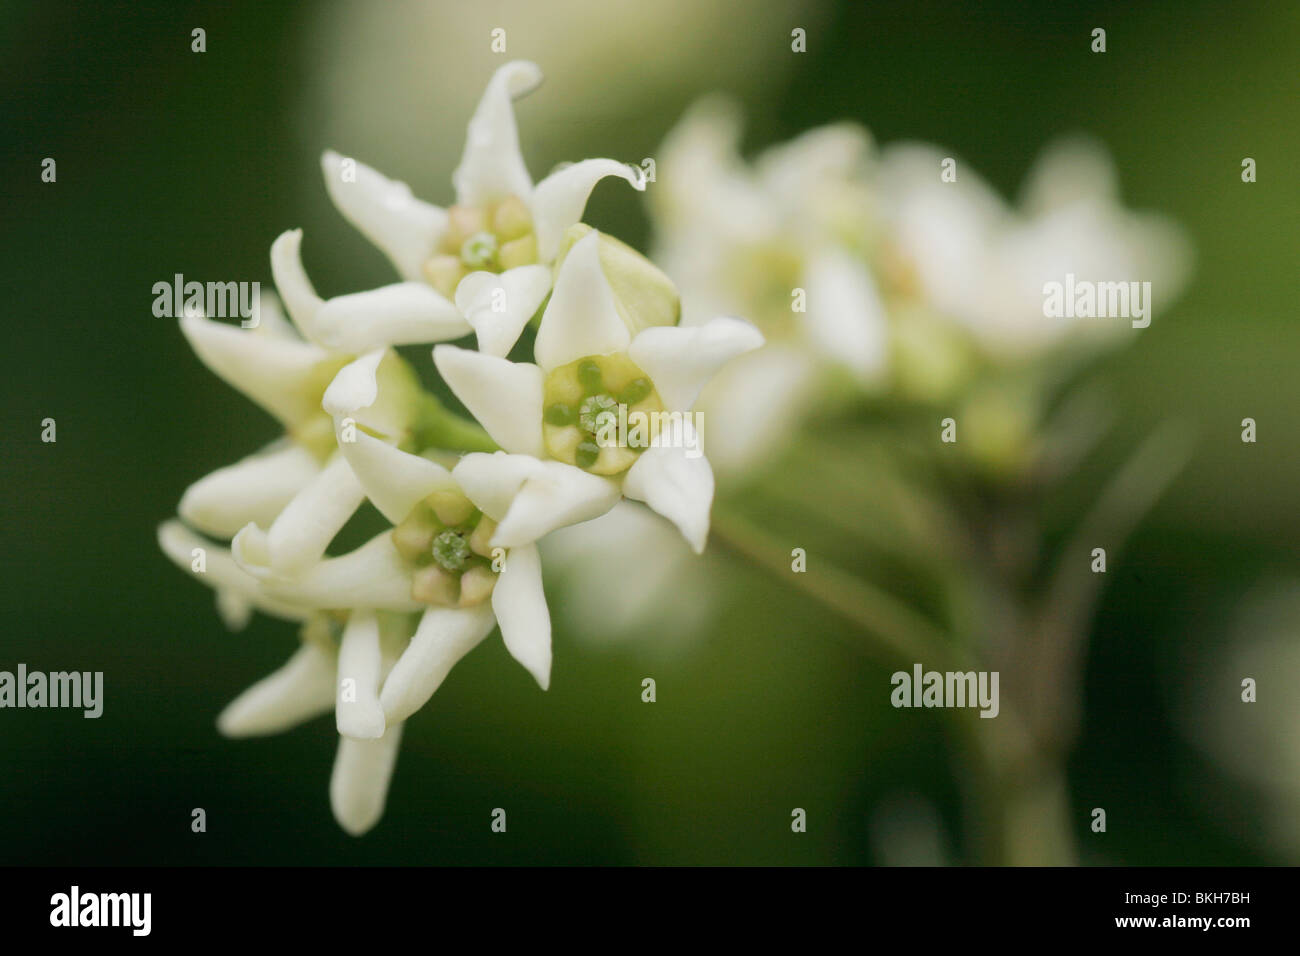 Small white flowers of Swallow-wort (Vincetoxicum hirundinaria) Stock Photo